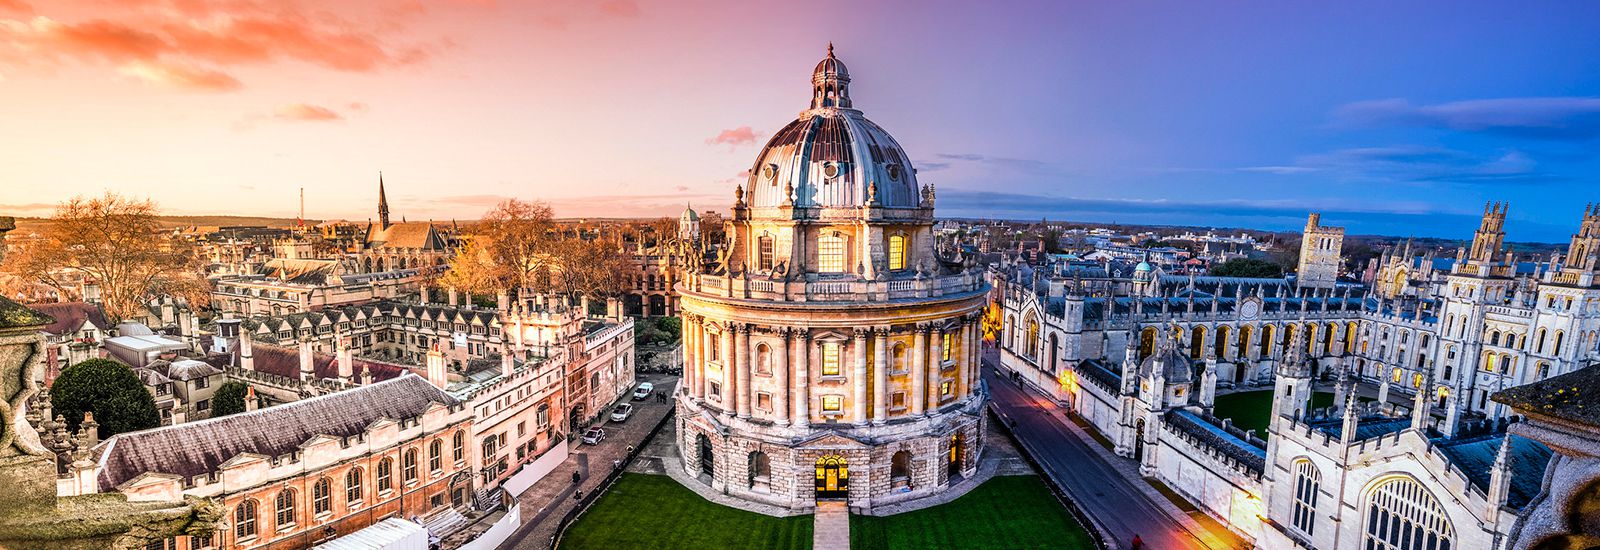 جامعة أوكسفورد تحظر التبرعات والمنح البحثية من هواوي